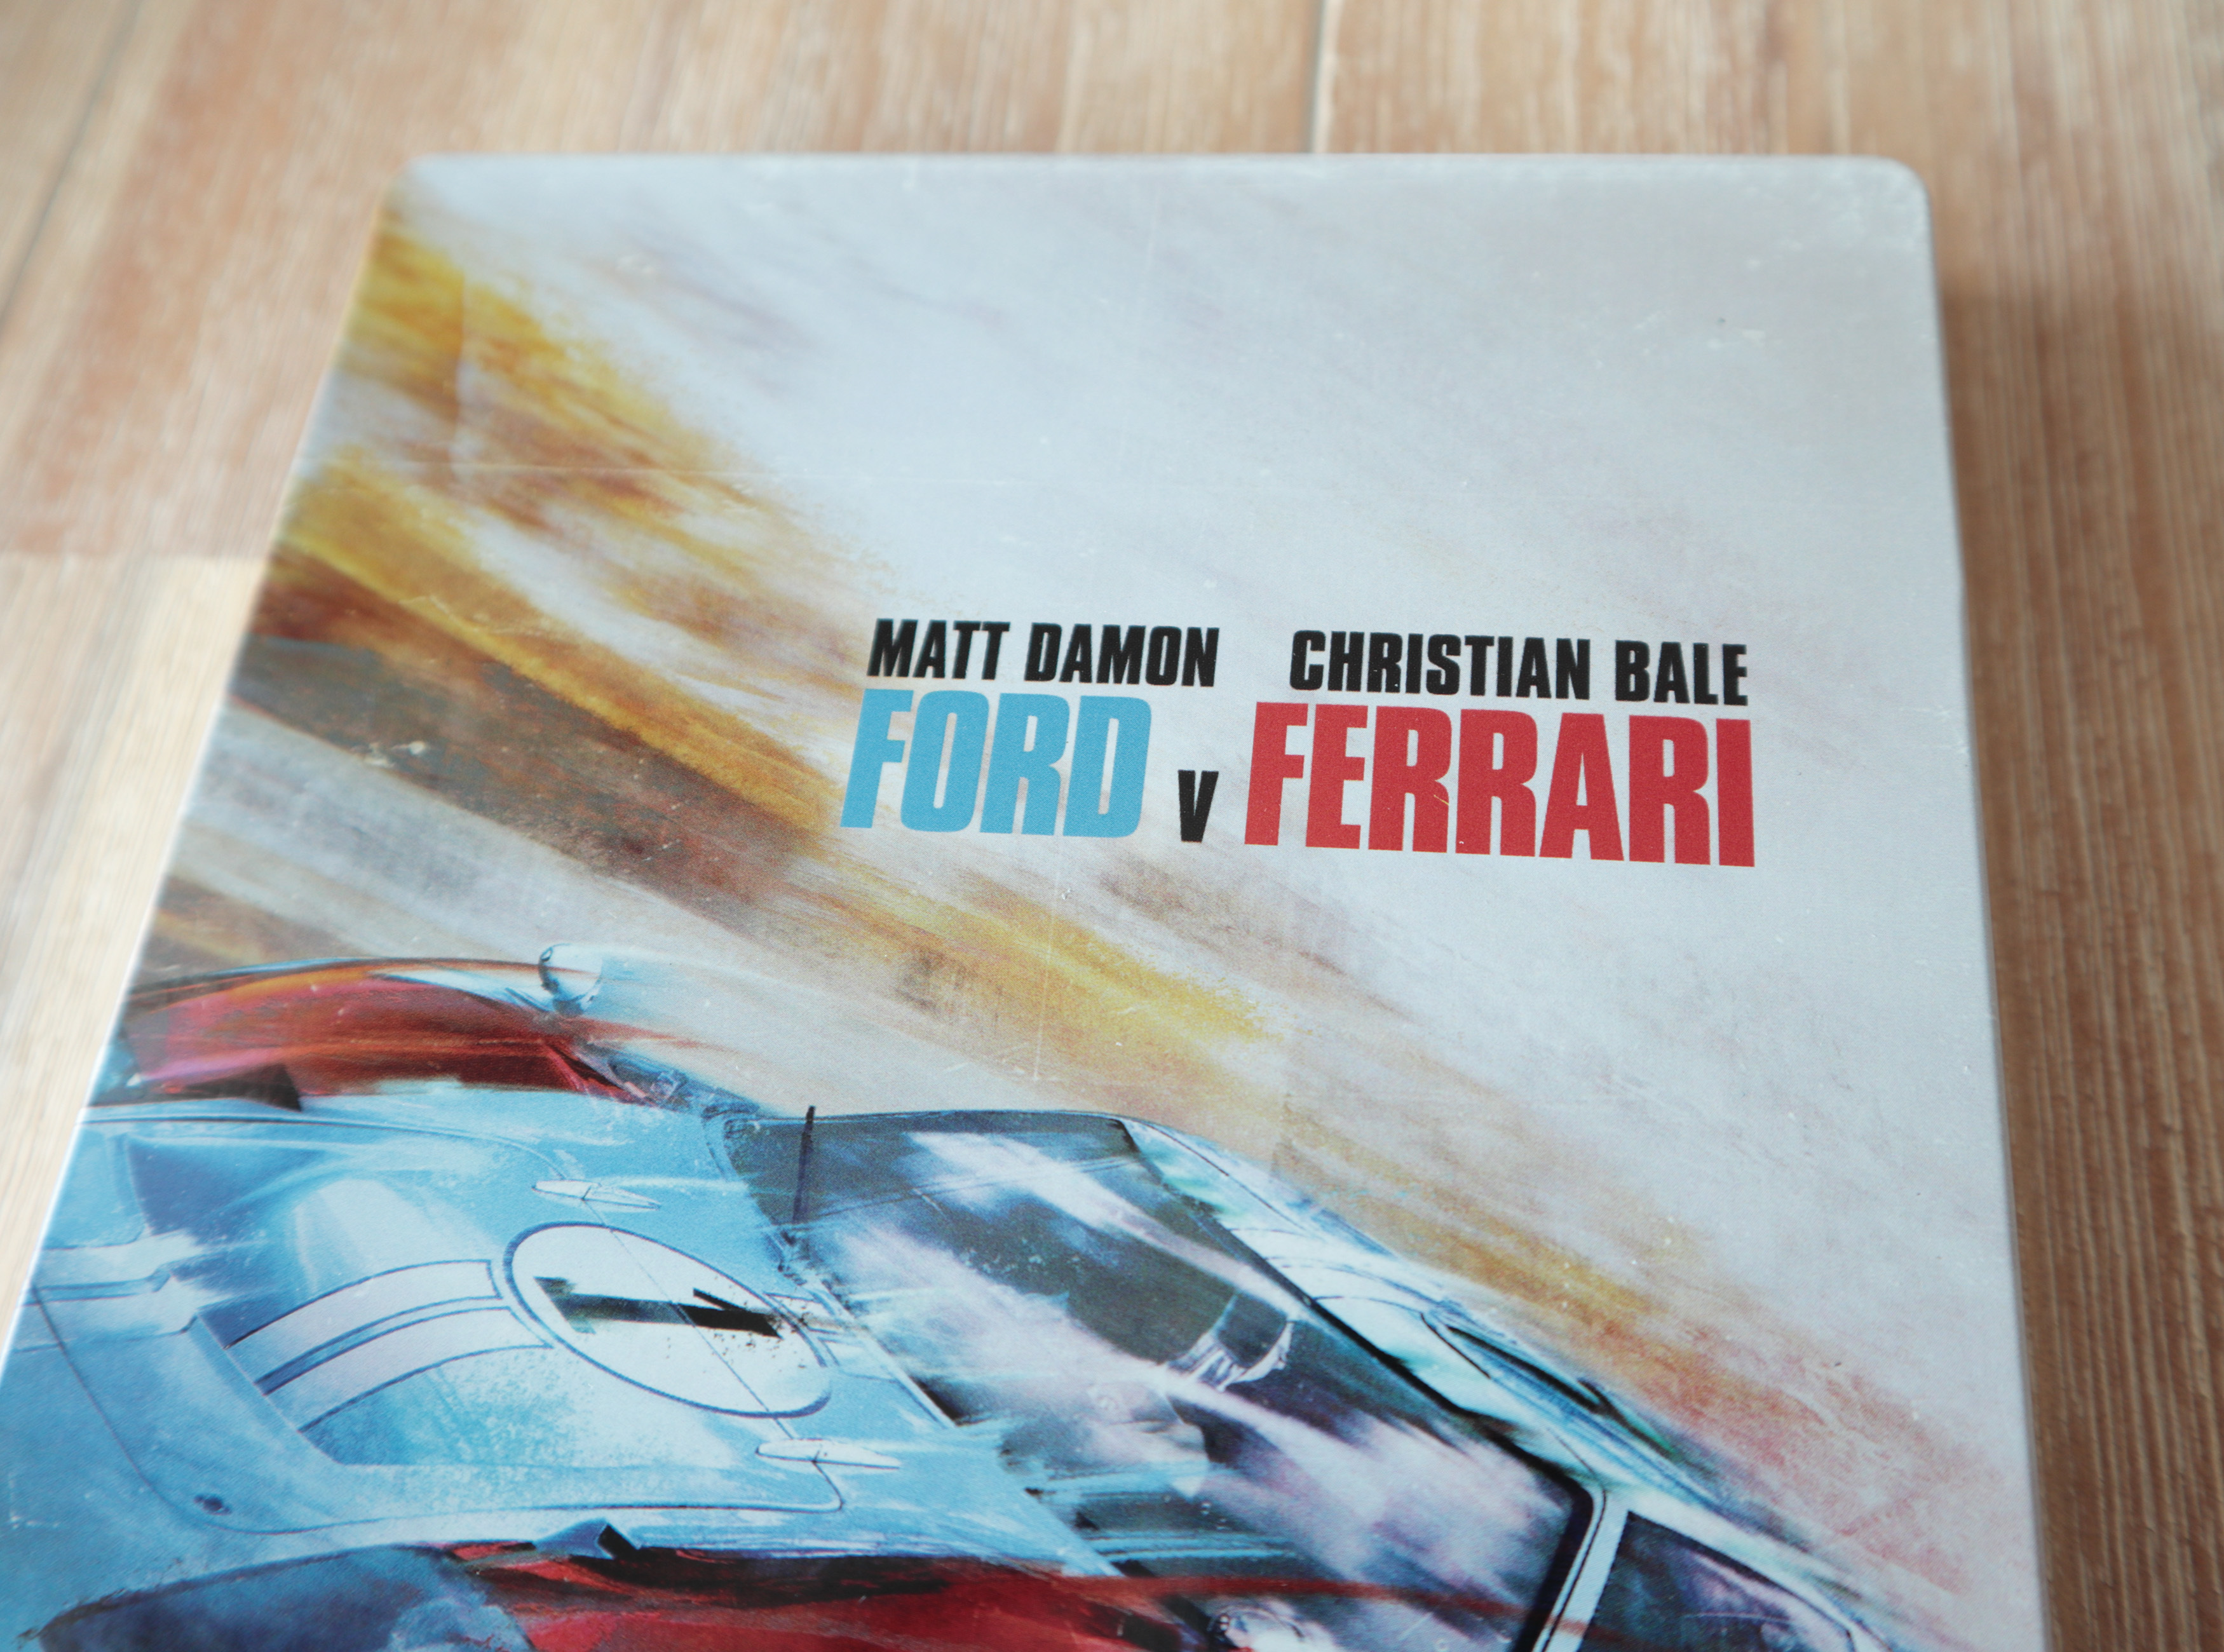 Ford v Ferrari best buy steelbook フォードvsフェラーリ スチールブック